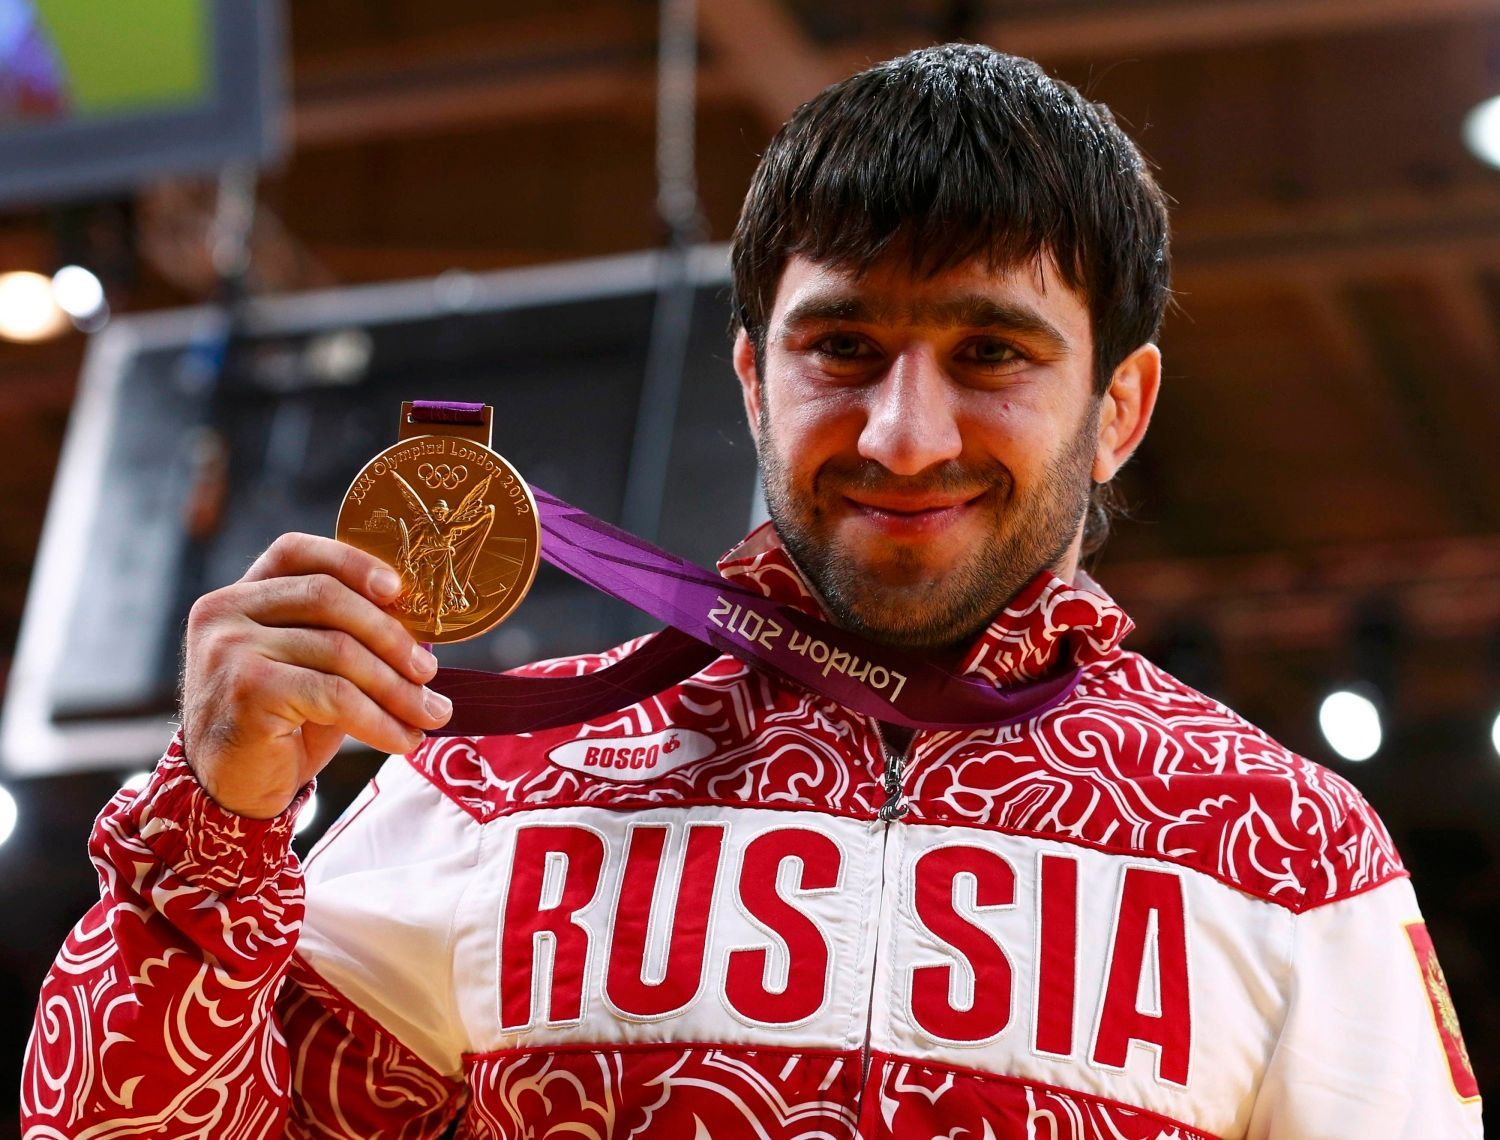 Ruský judista Mansur Isajev pózuje se zlatou medailí za kategorii mužů do 73 kg na OH 2012 v Londýně.